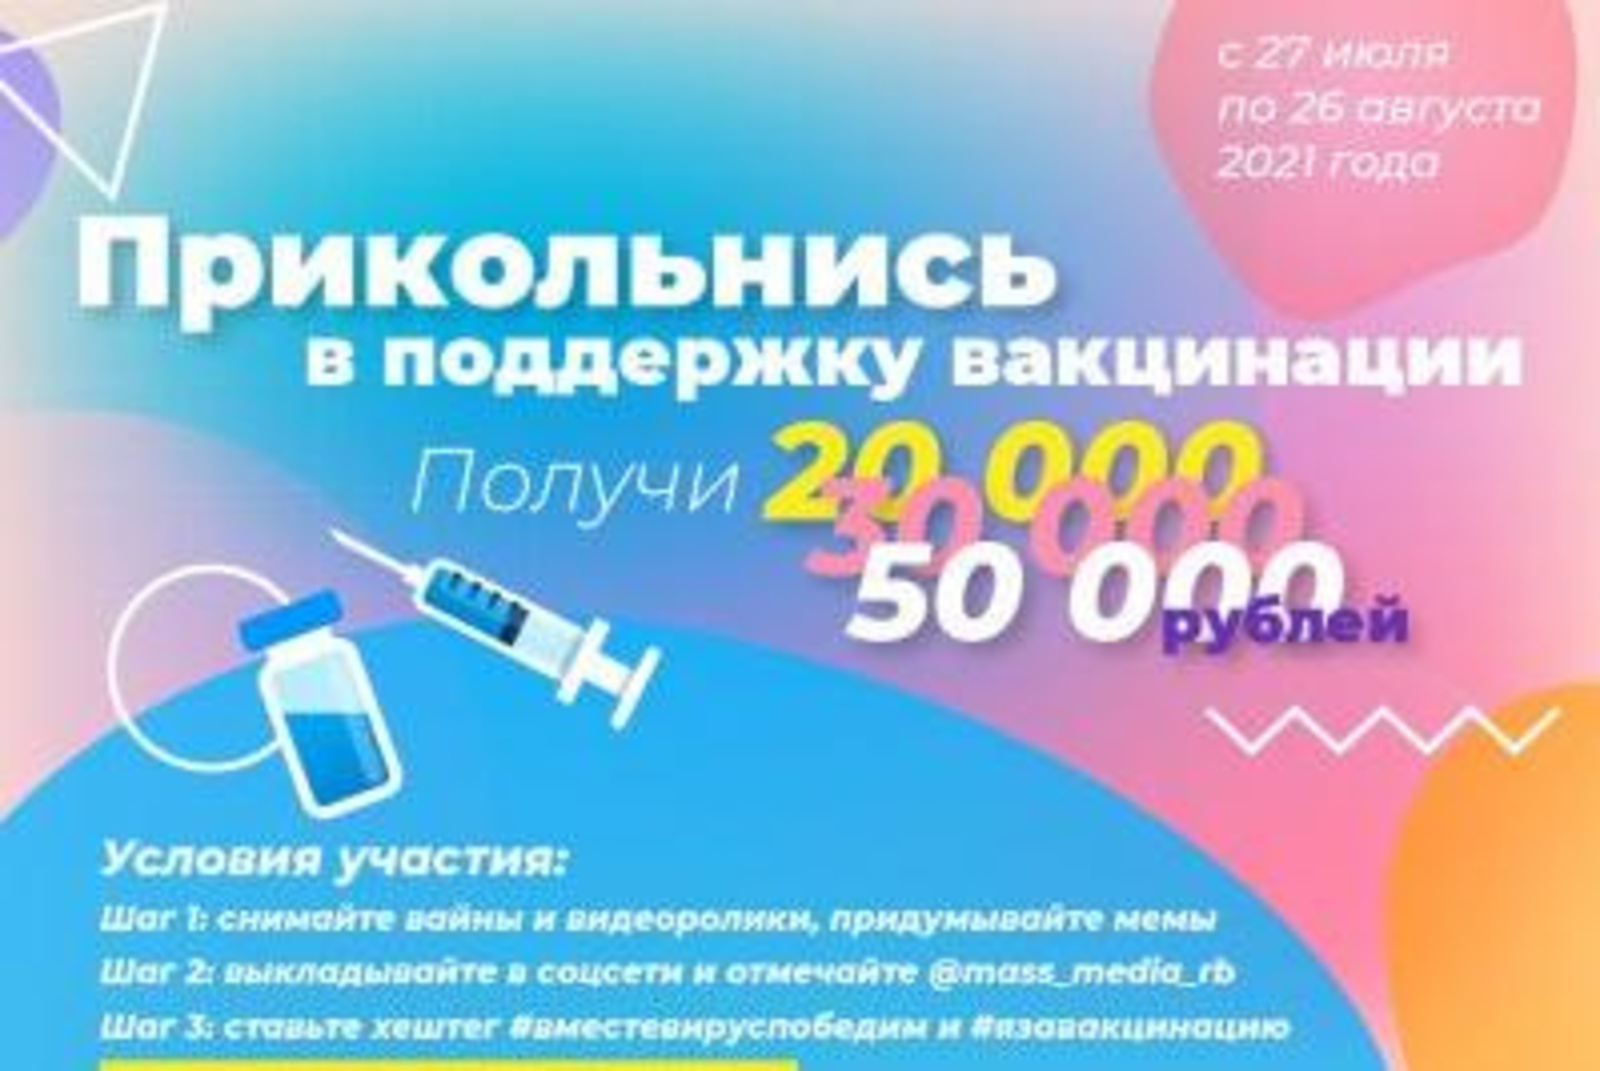 Союз журналистов Башкирии объявил конкурс в поддержку вакцинации